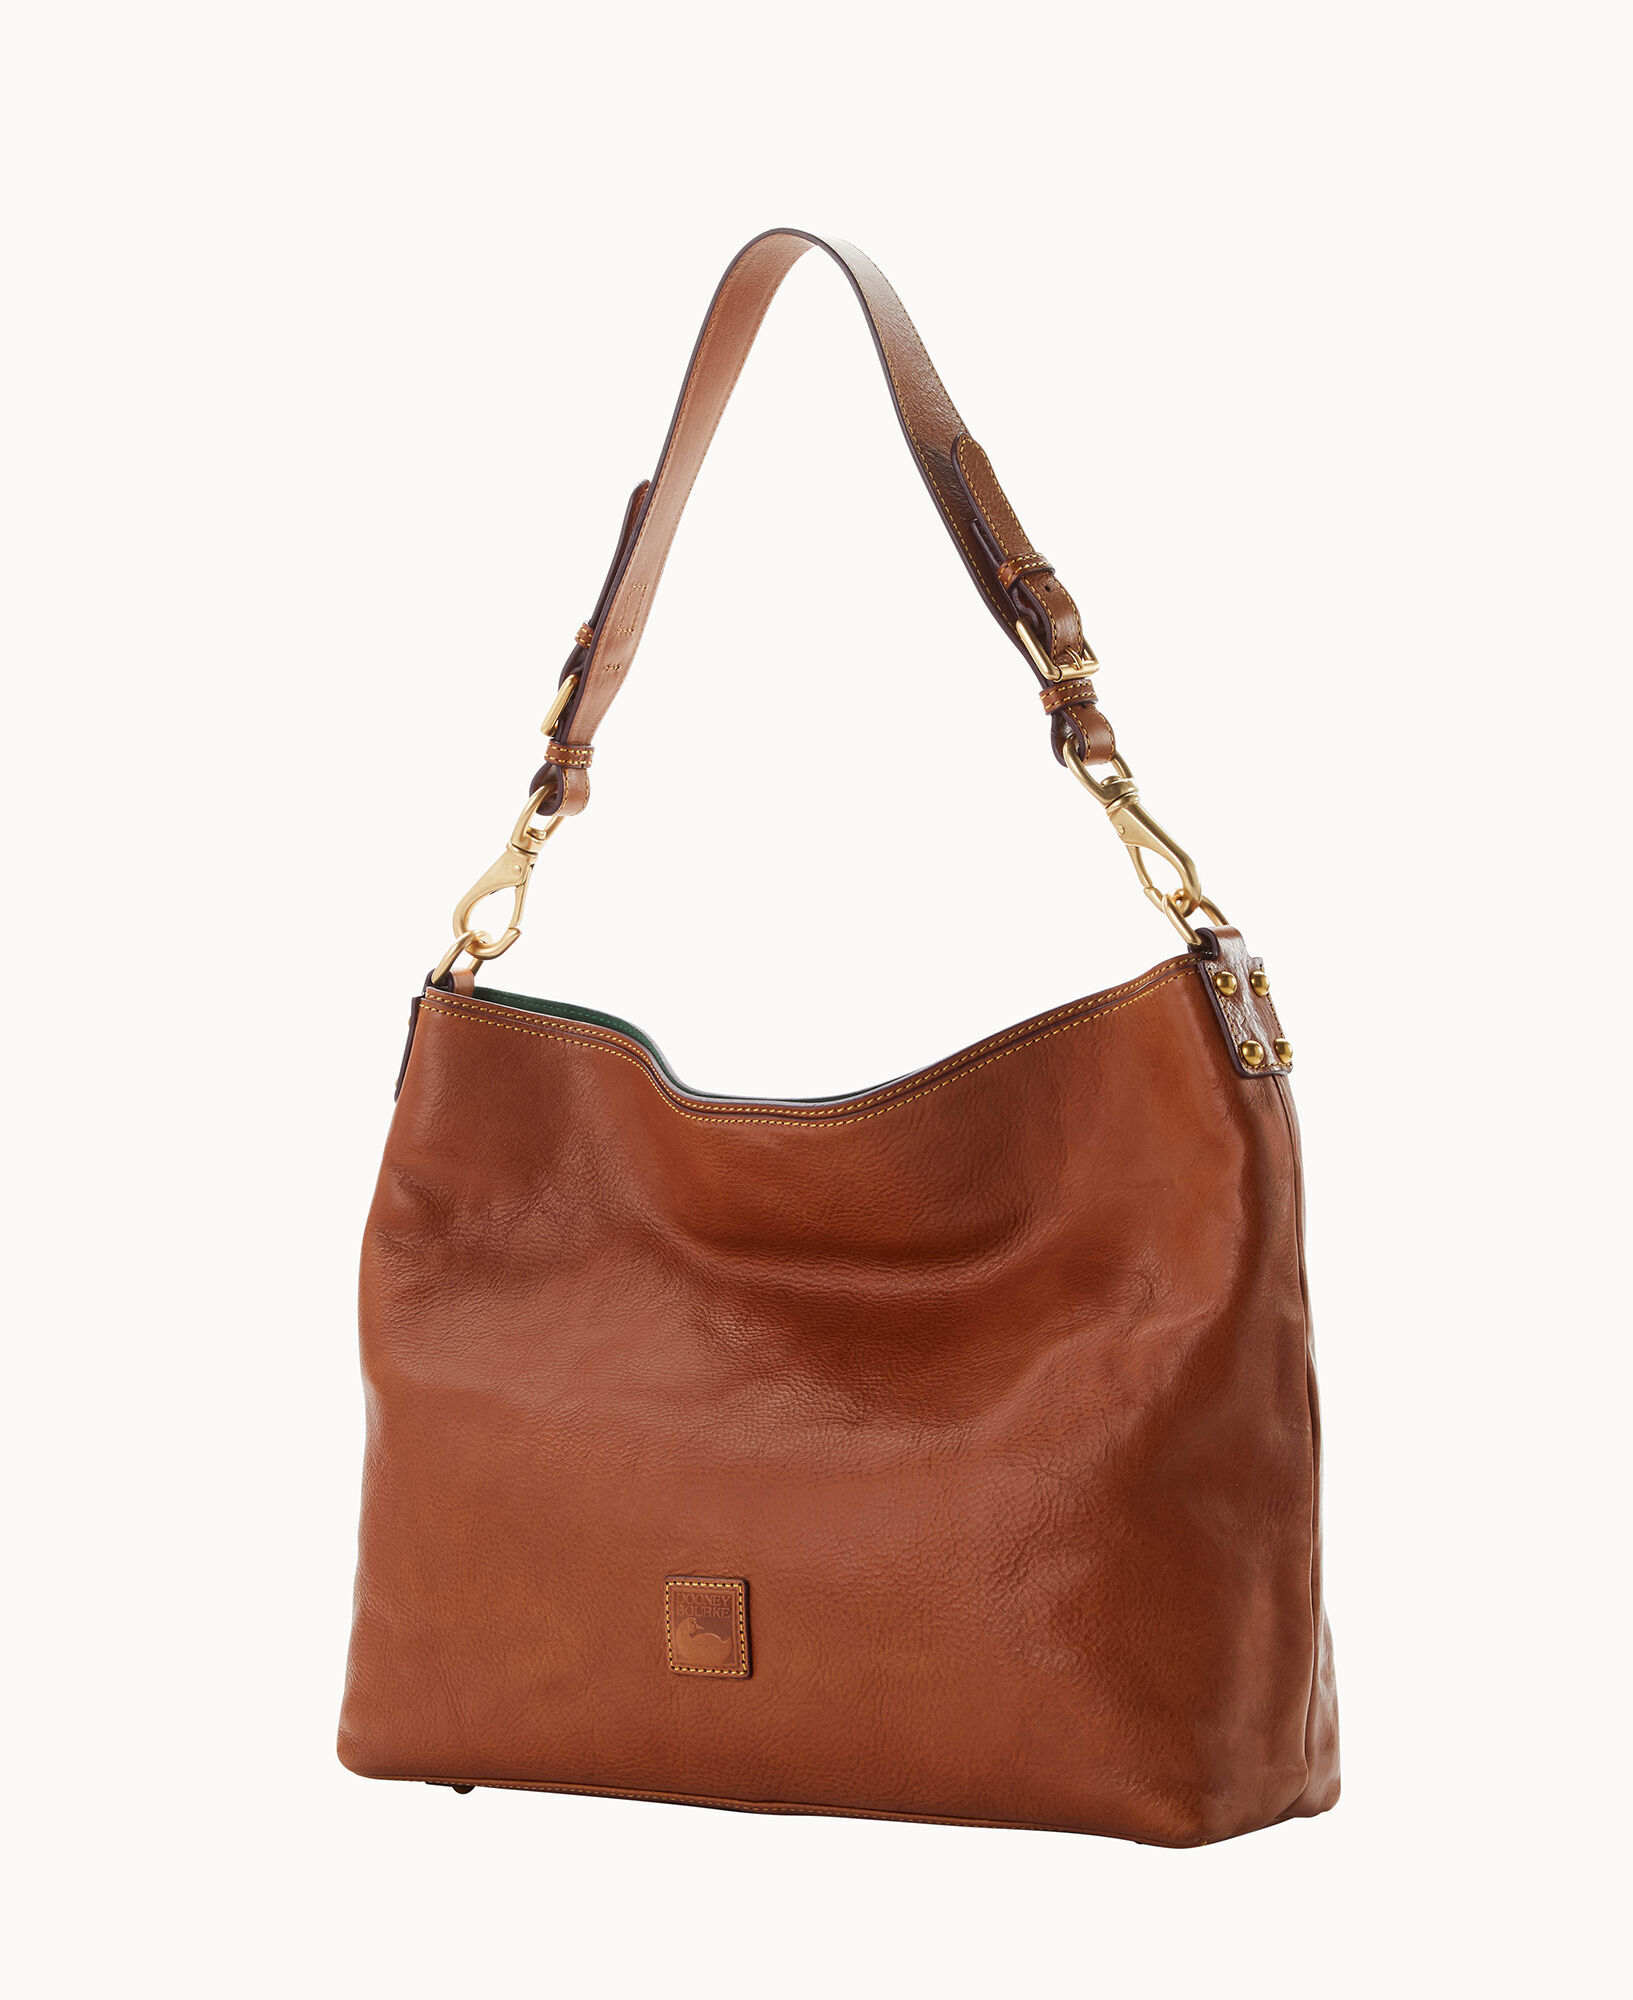 courtney clutch purse